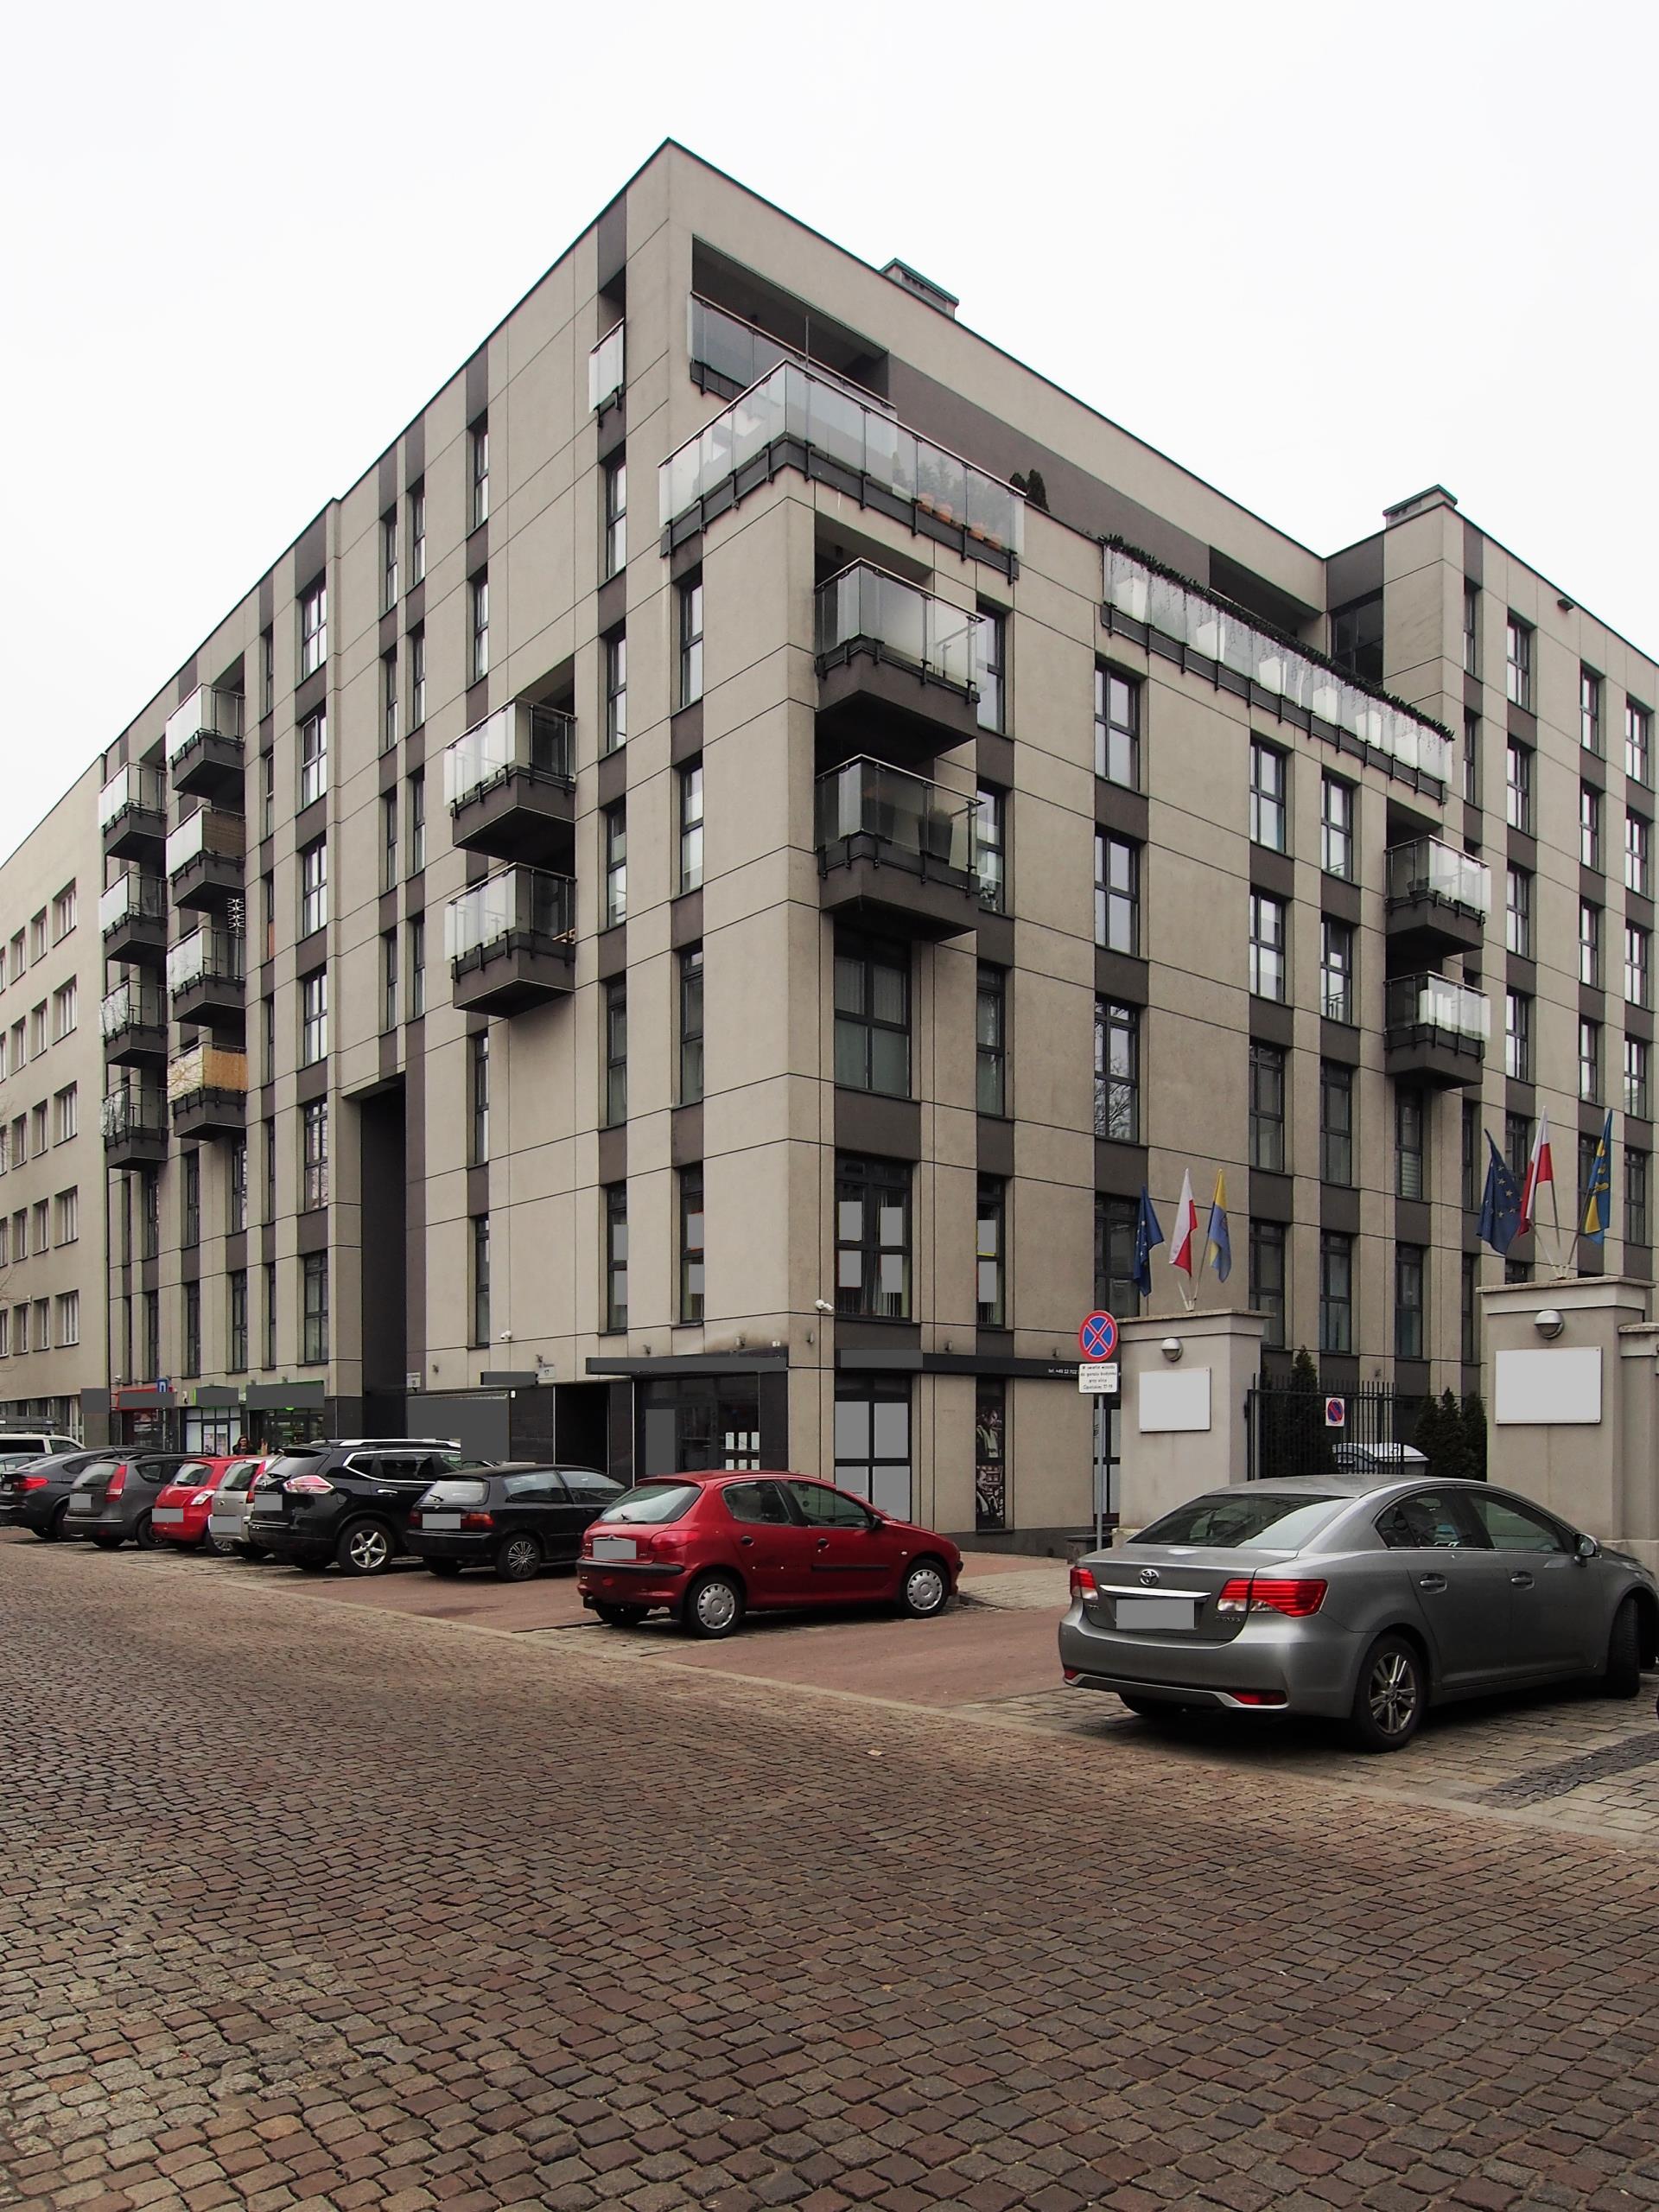 Lokal usługowy/biurowy w centrum Katowic